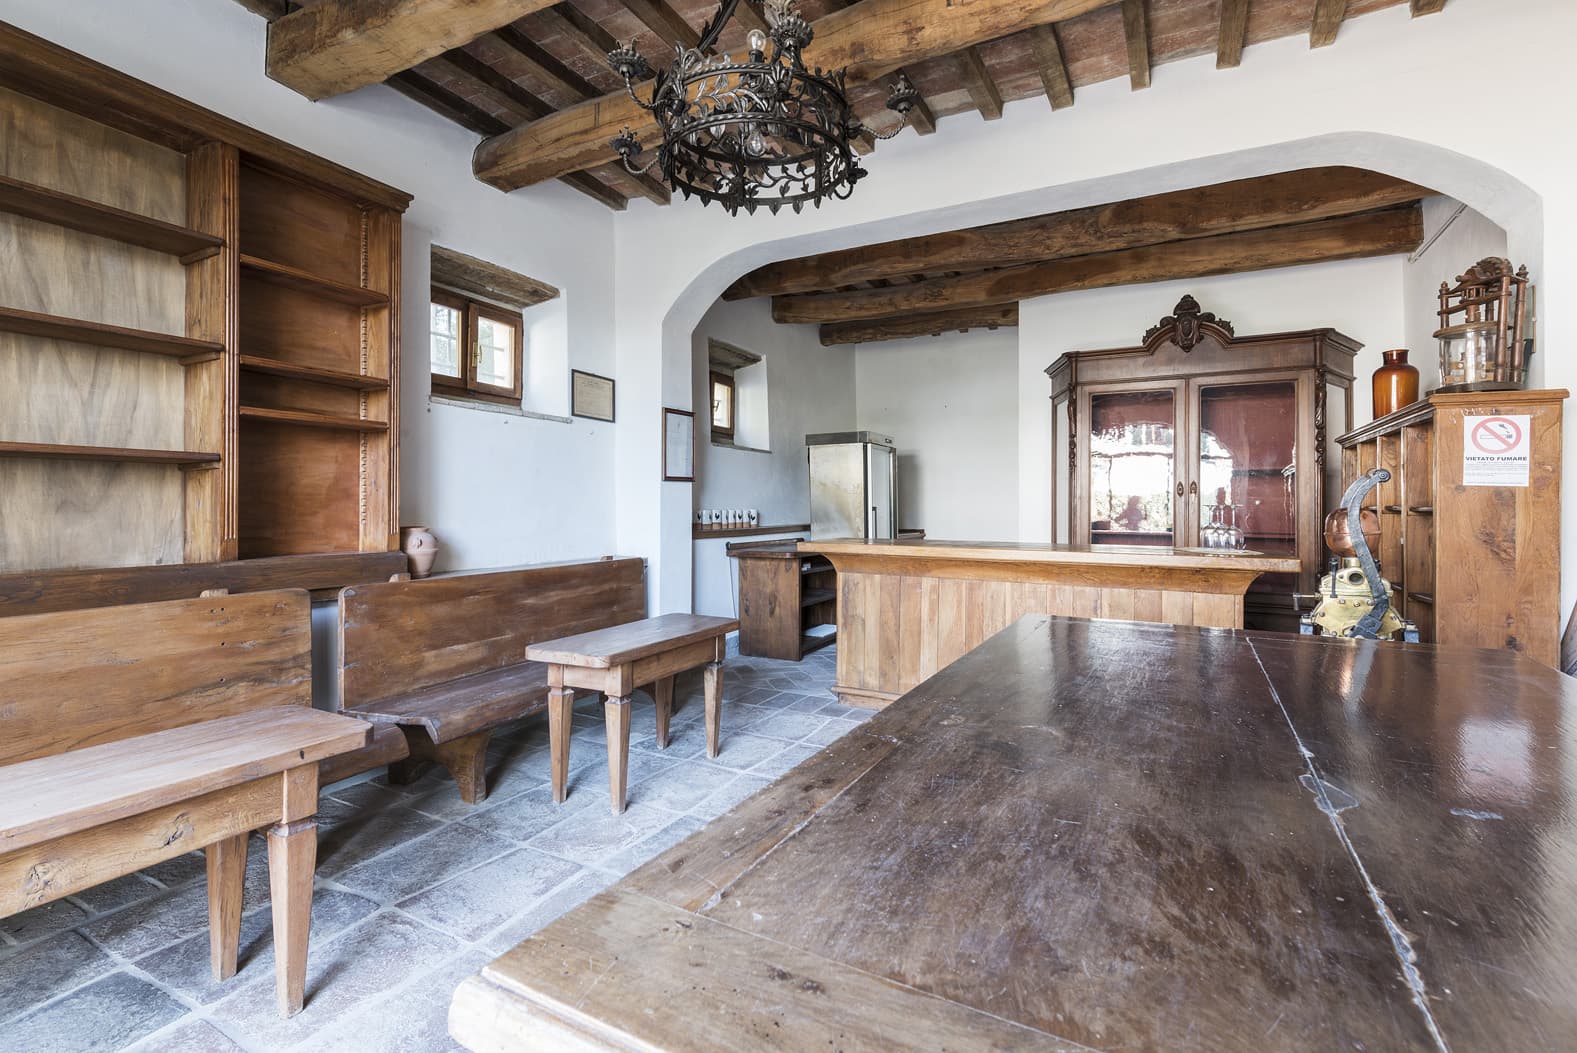  Bedroom Villa For Sale Borgo In Chianti Lp0793 271c681f5477cc00.jpg